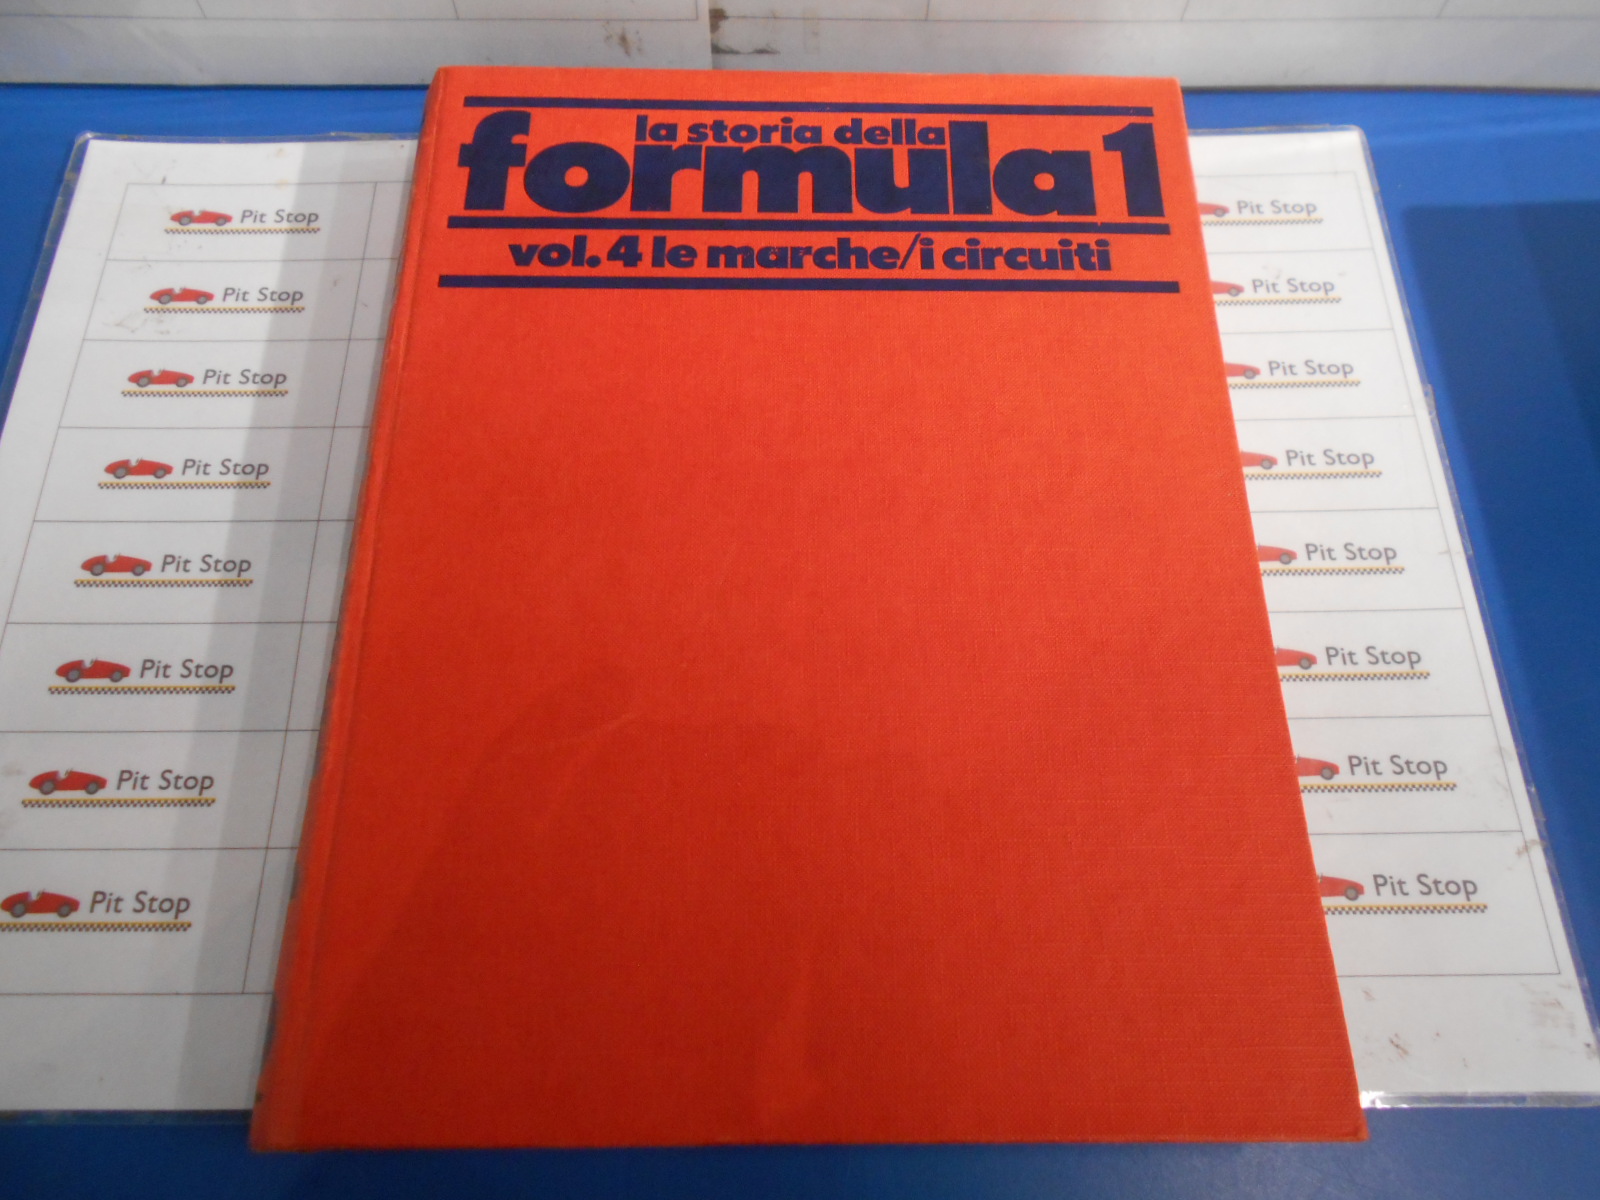 Libro La storia della Formula 1 vol  4 Le marche I circuiti